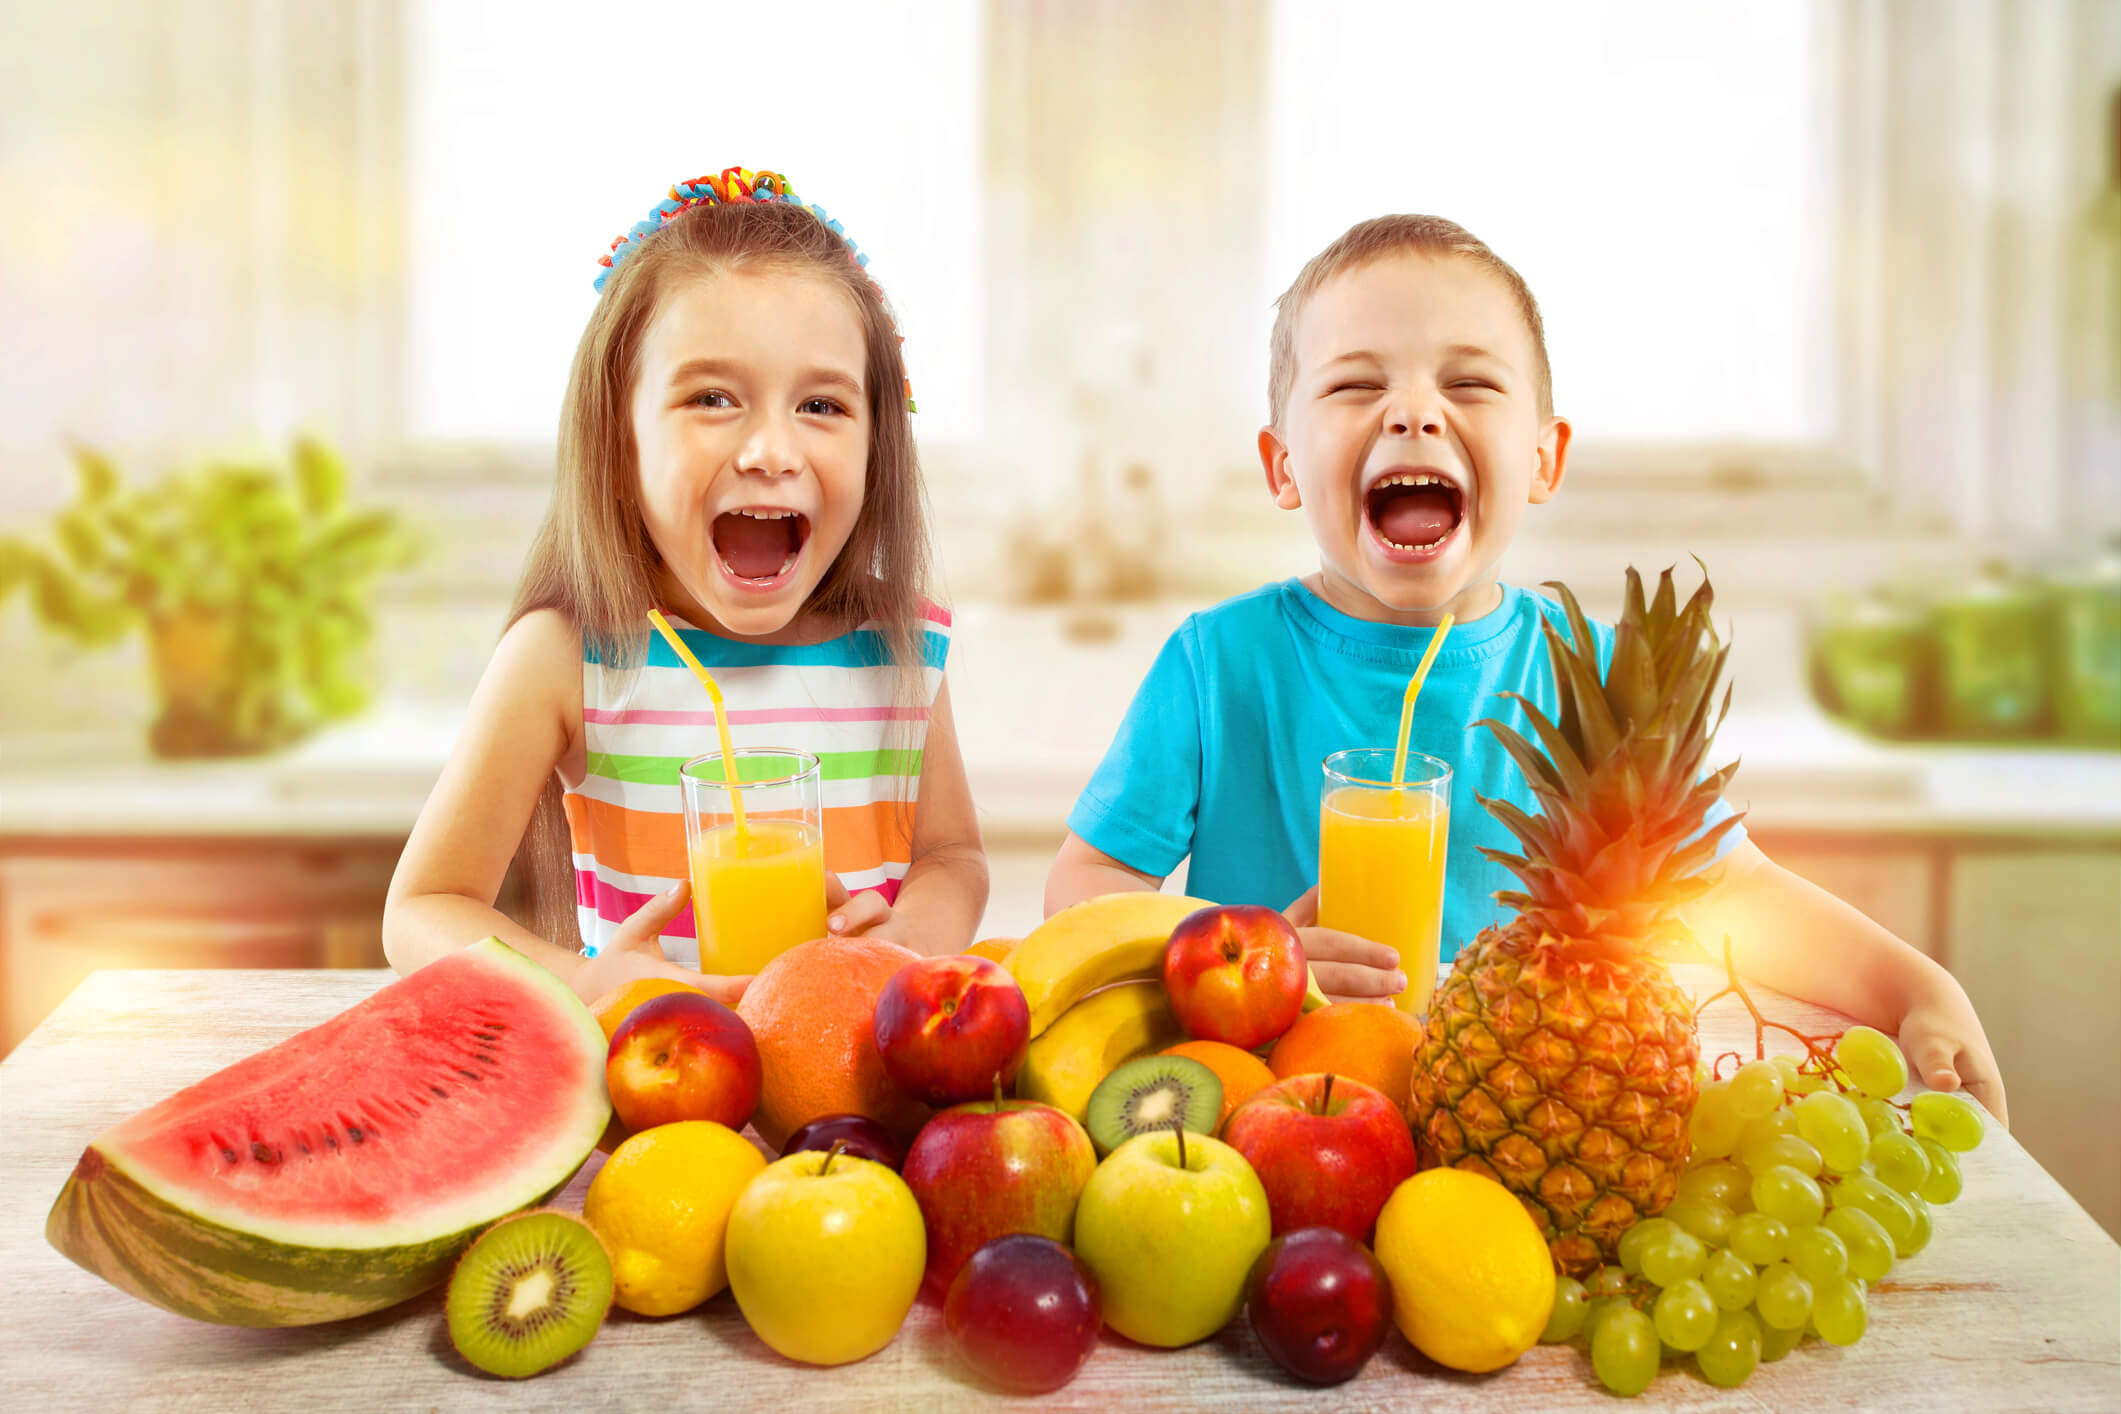 Los niños pueden preparar jugos de frutas naturales